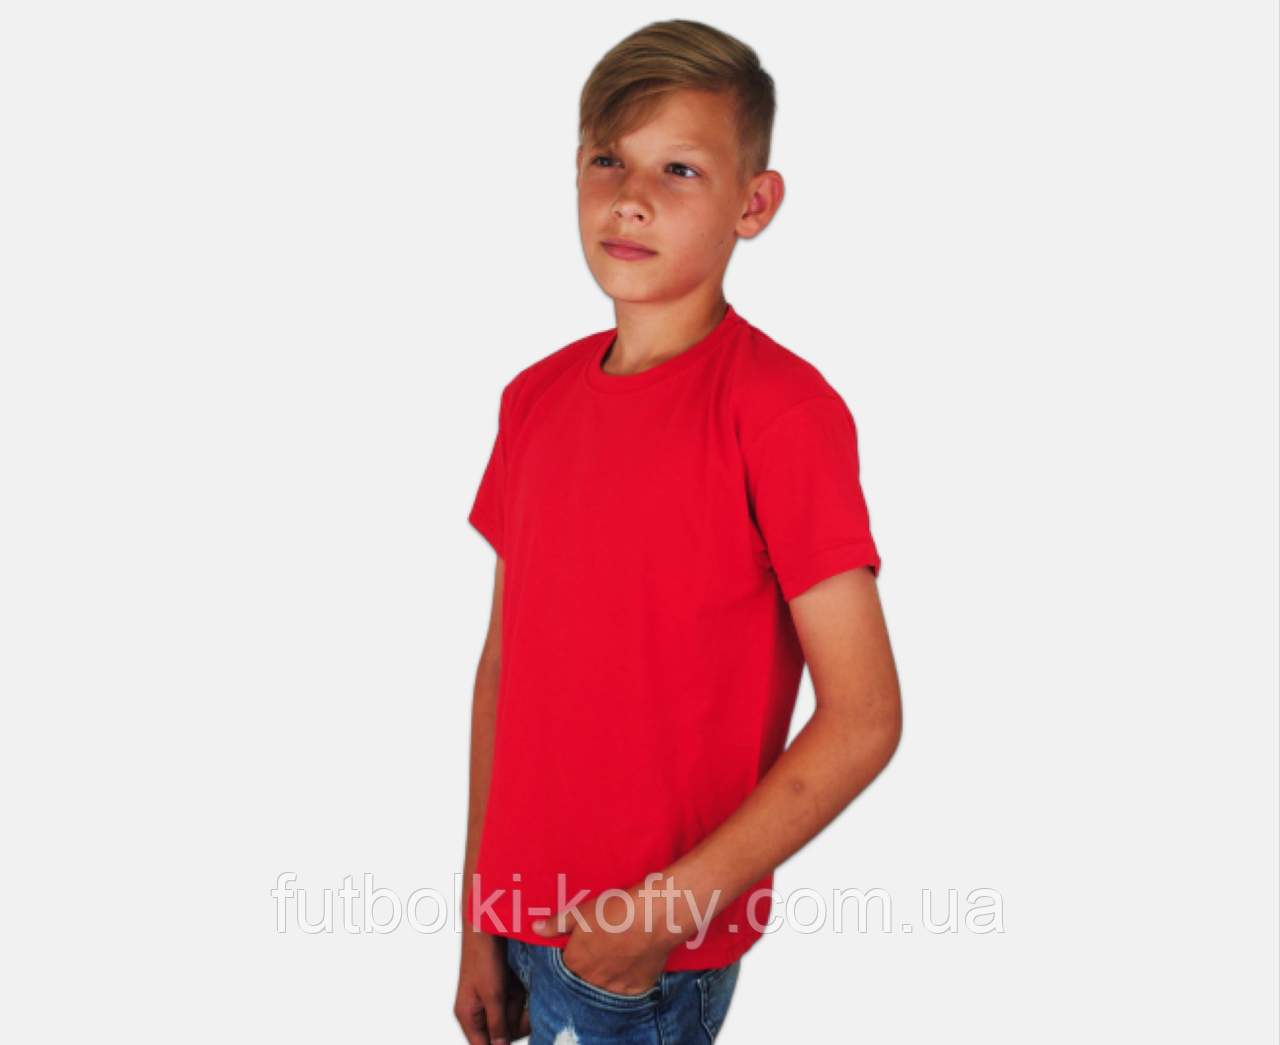 Дитяча Класична футболка для хлопчиків Червона Fruit of the loom 61-033-40 5-6